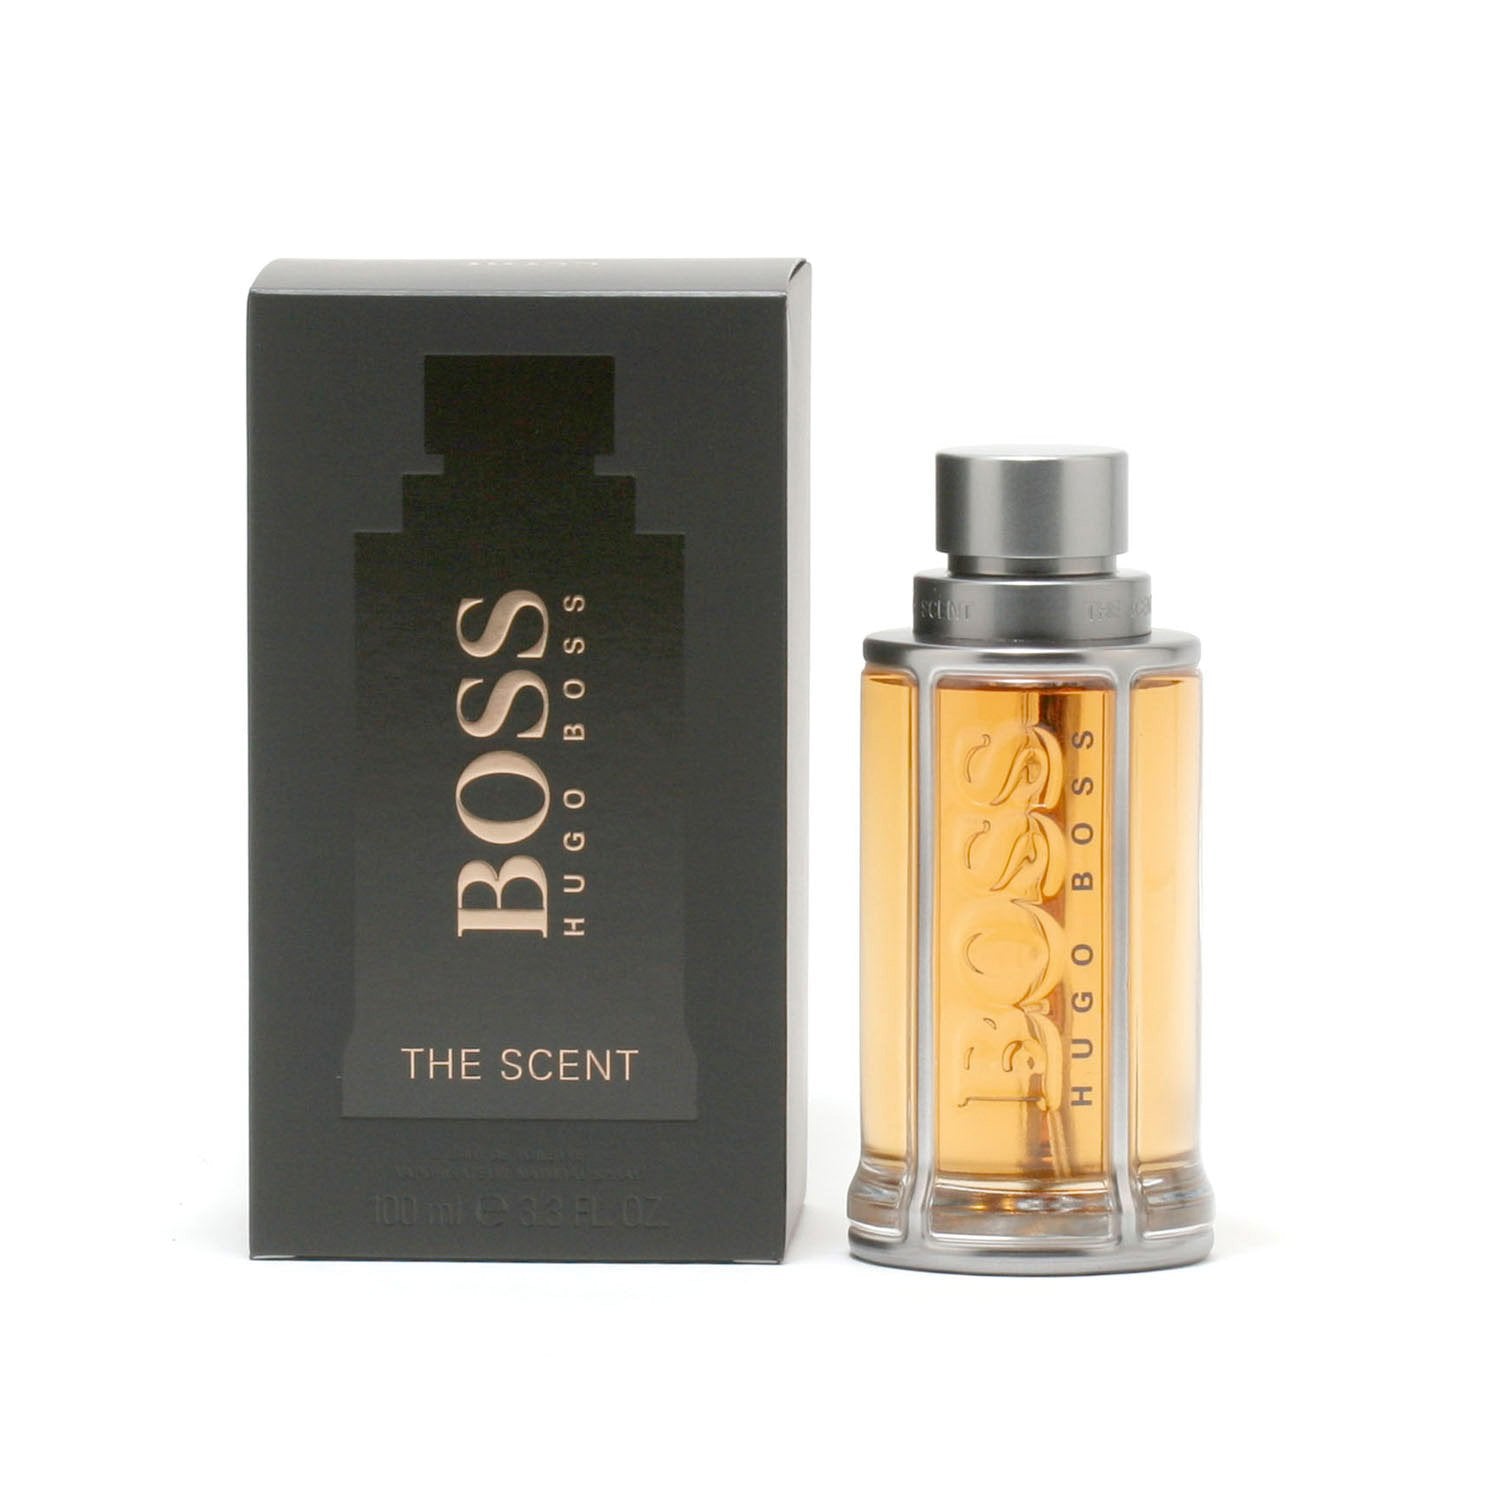 BOSS THE SCENT FOR MEN BY HUGO BOSS - EAU DE TOILETTE SPRAY – Fragrance ...